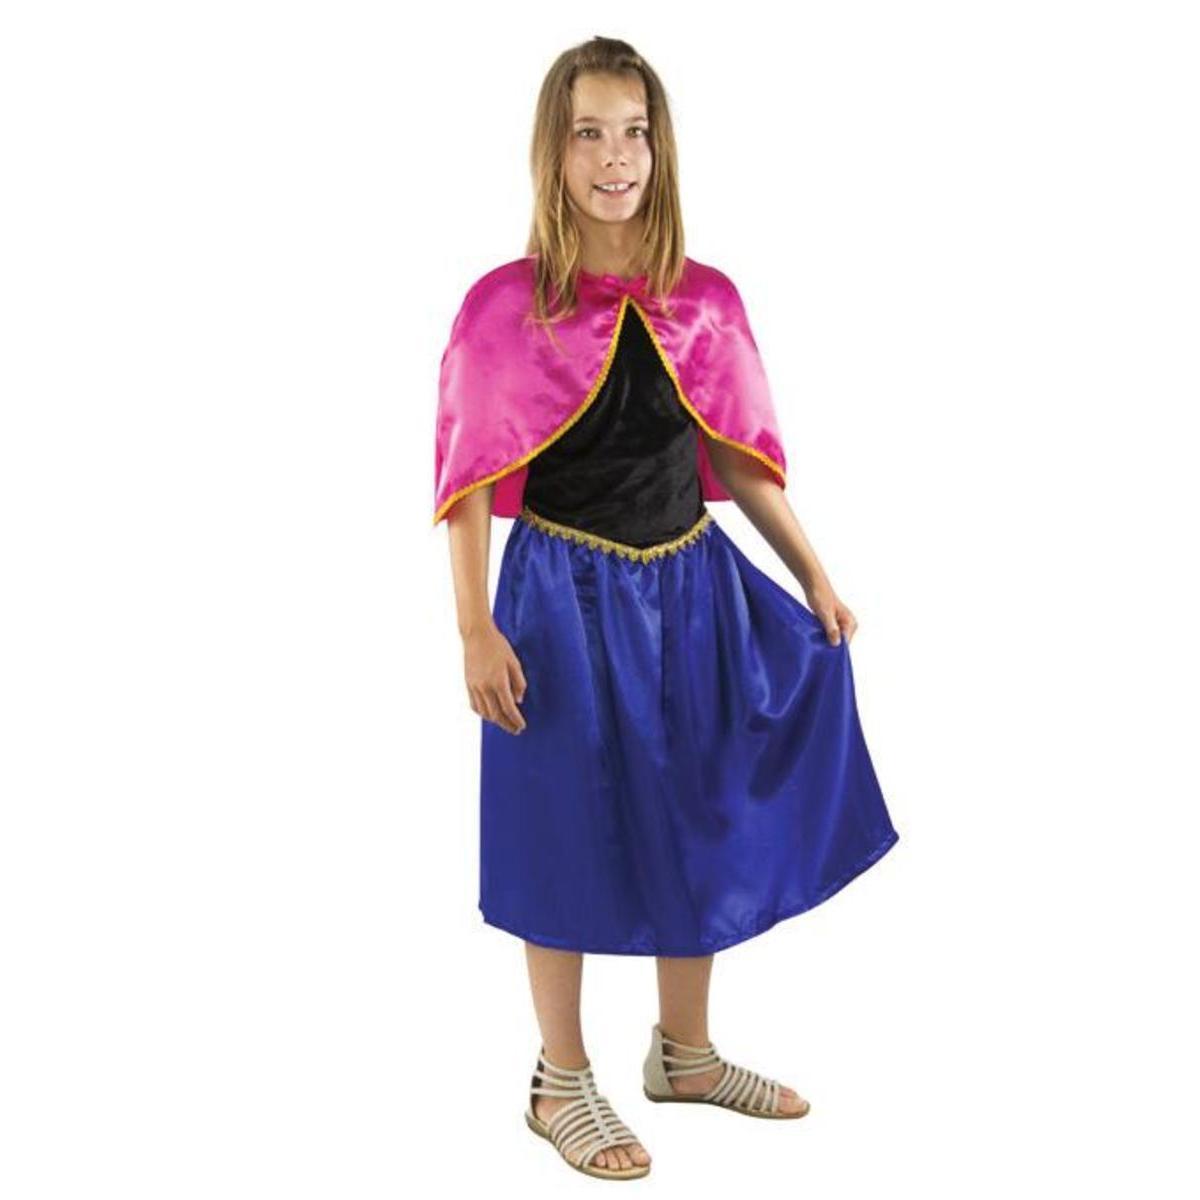 Costume enfant Reine des glaces - Taille S - L 48 x H 3 x l 44 cm - Multicolore - PTIT CLOWN